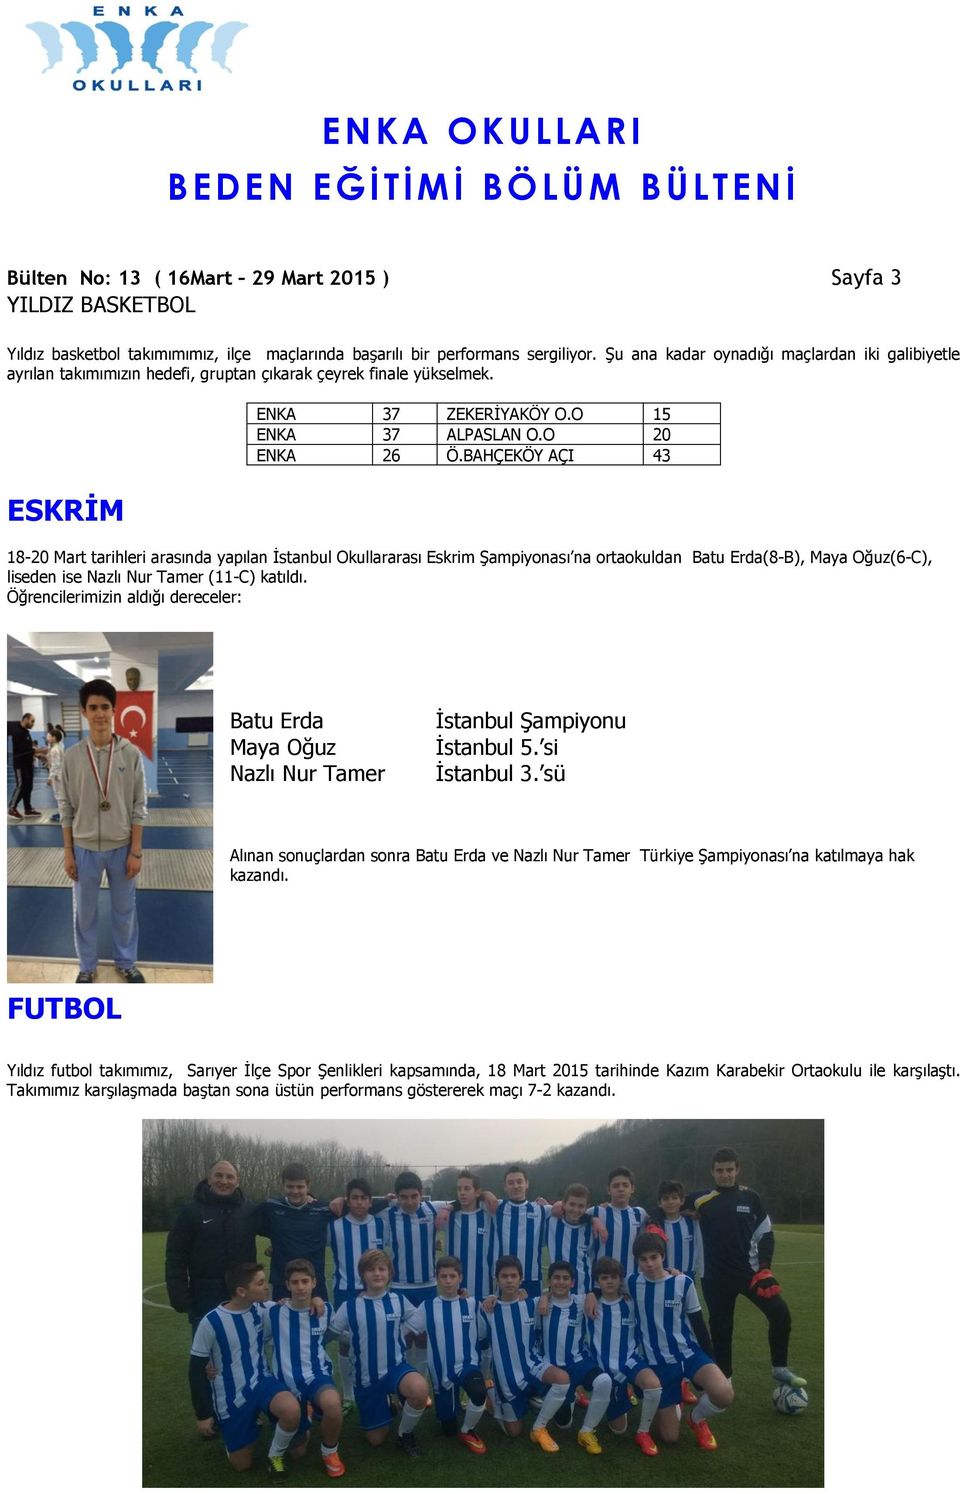 BAHÇEKÖY AÇI 43 18-20 Mart tarihleri arasında yapılan İstanbul Okullararası Eskrim Şampiyonası na ortaokuldan Batu Erda(8-B), Maya Oğuz(6-C), liseden ise Nazlı Nur Tamer (11-C) katıldı.